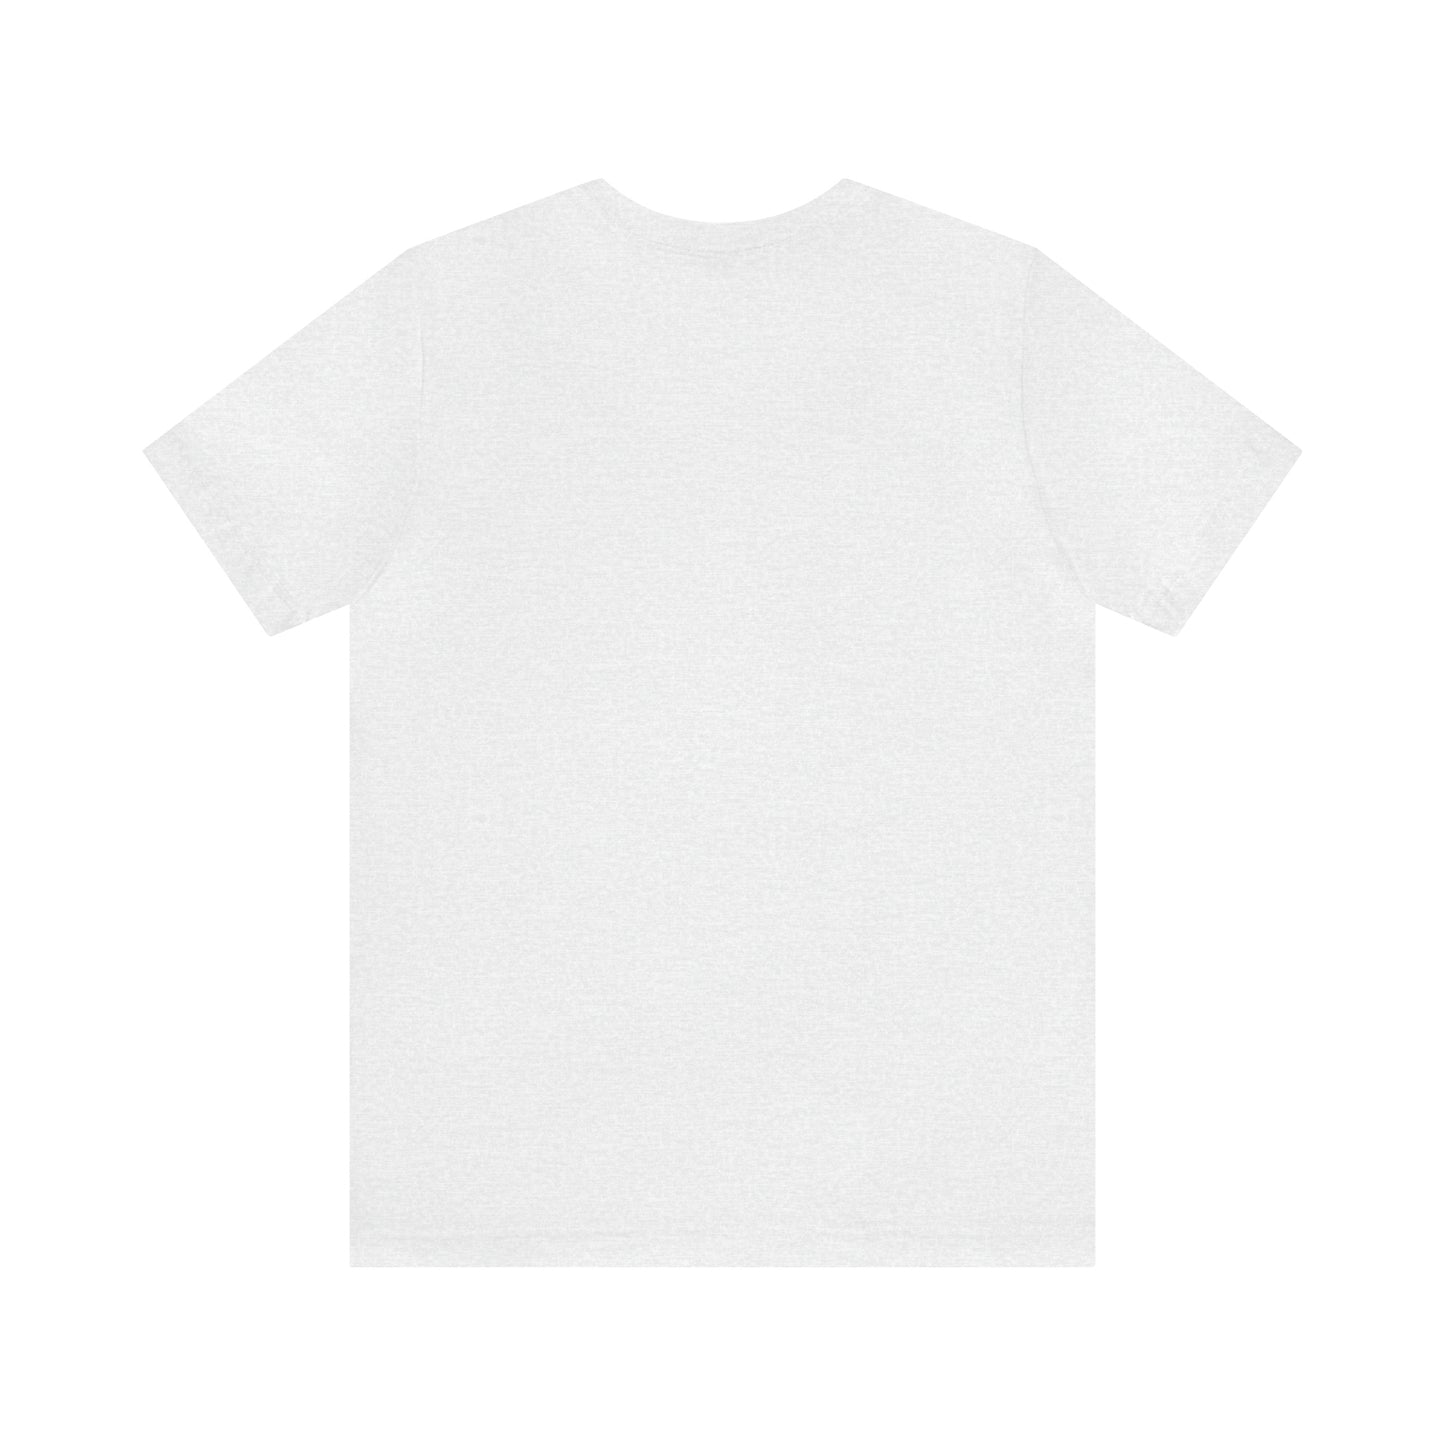 Swimmer's T-Shirt: Unisex Jersey Short Sleeve Tee